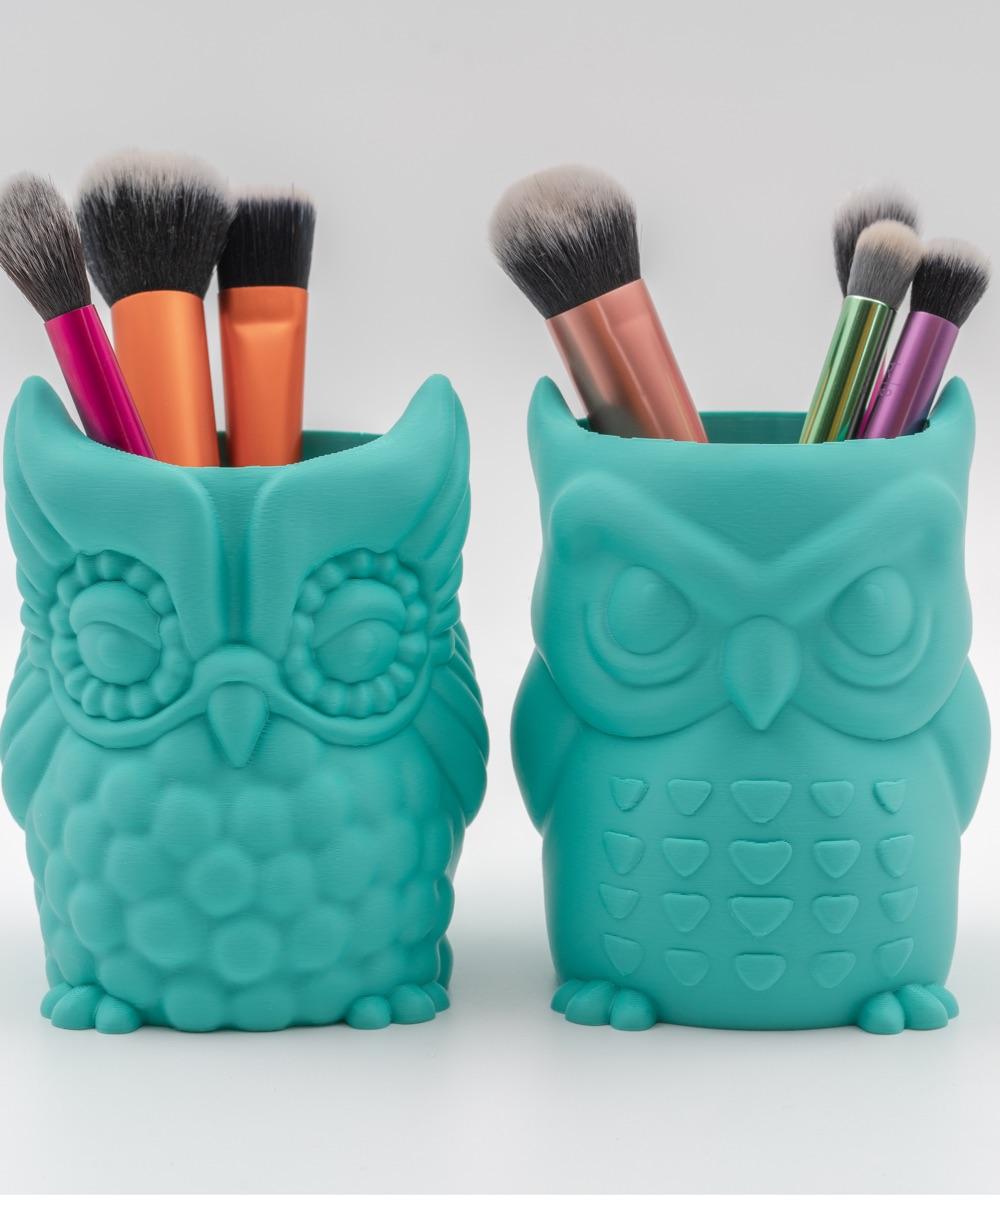 Grumpy Owl Planter and Owl Pencil Pot 3d model